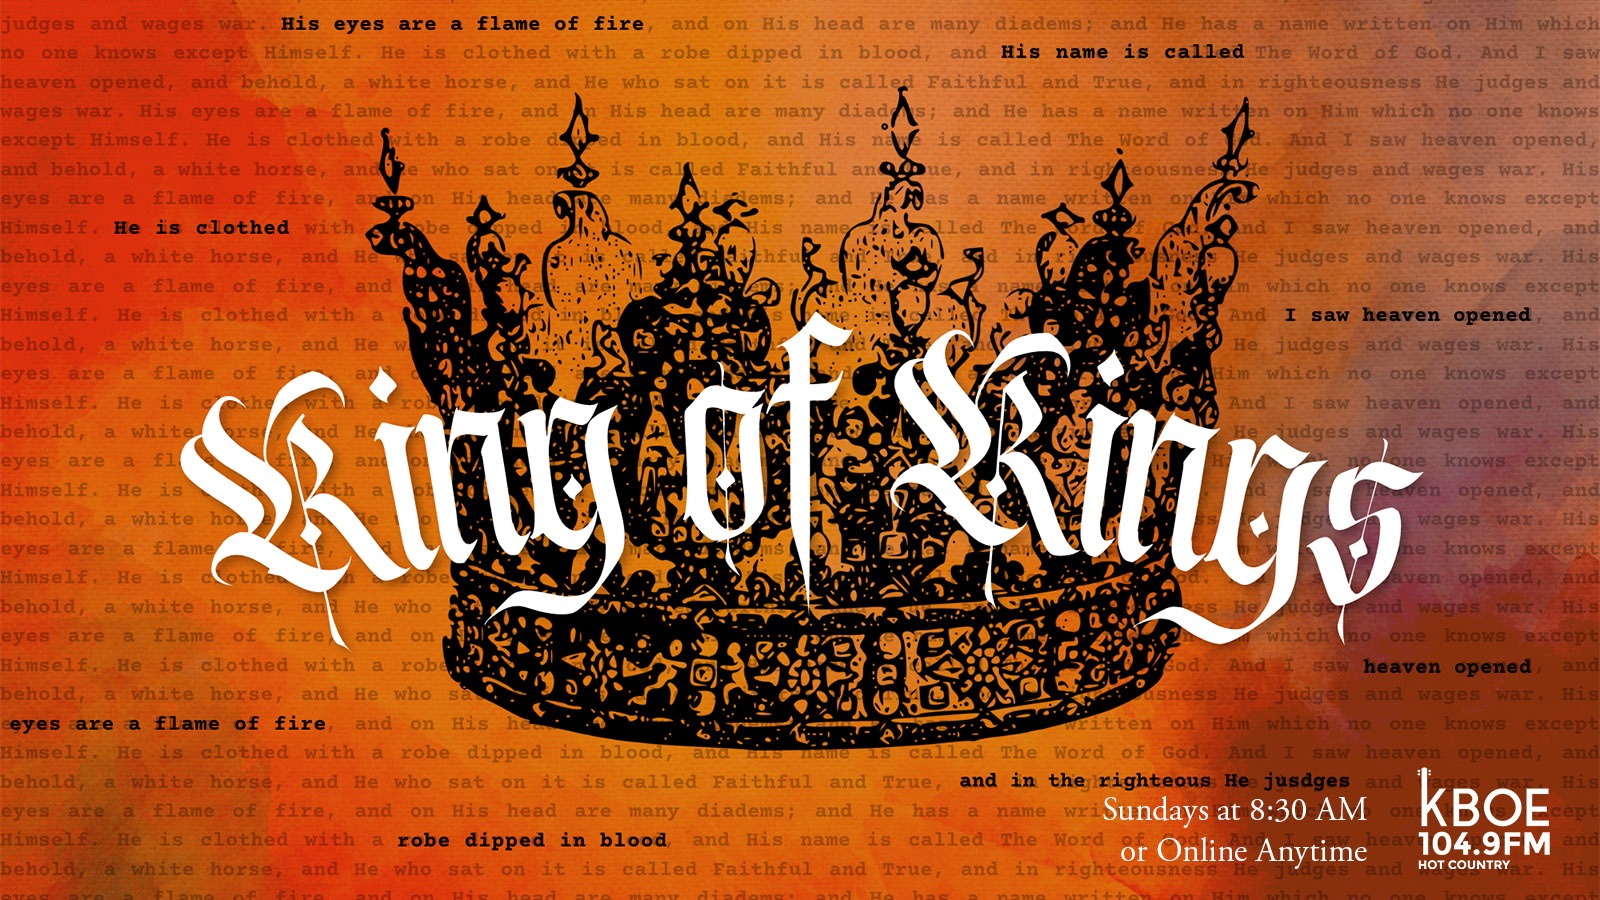 KBOE Radio Series - King of Kings